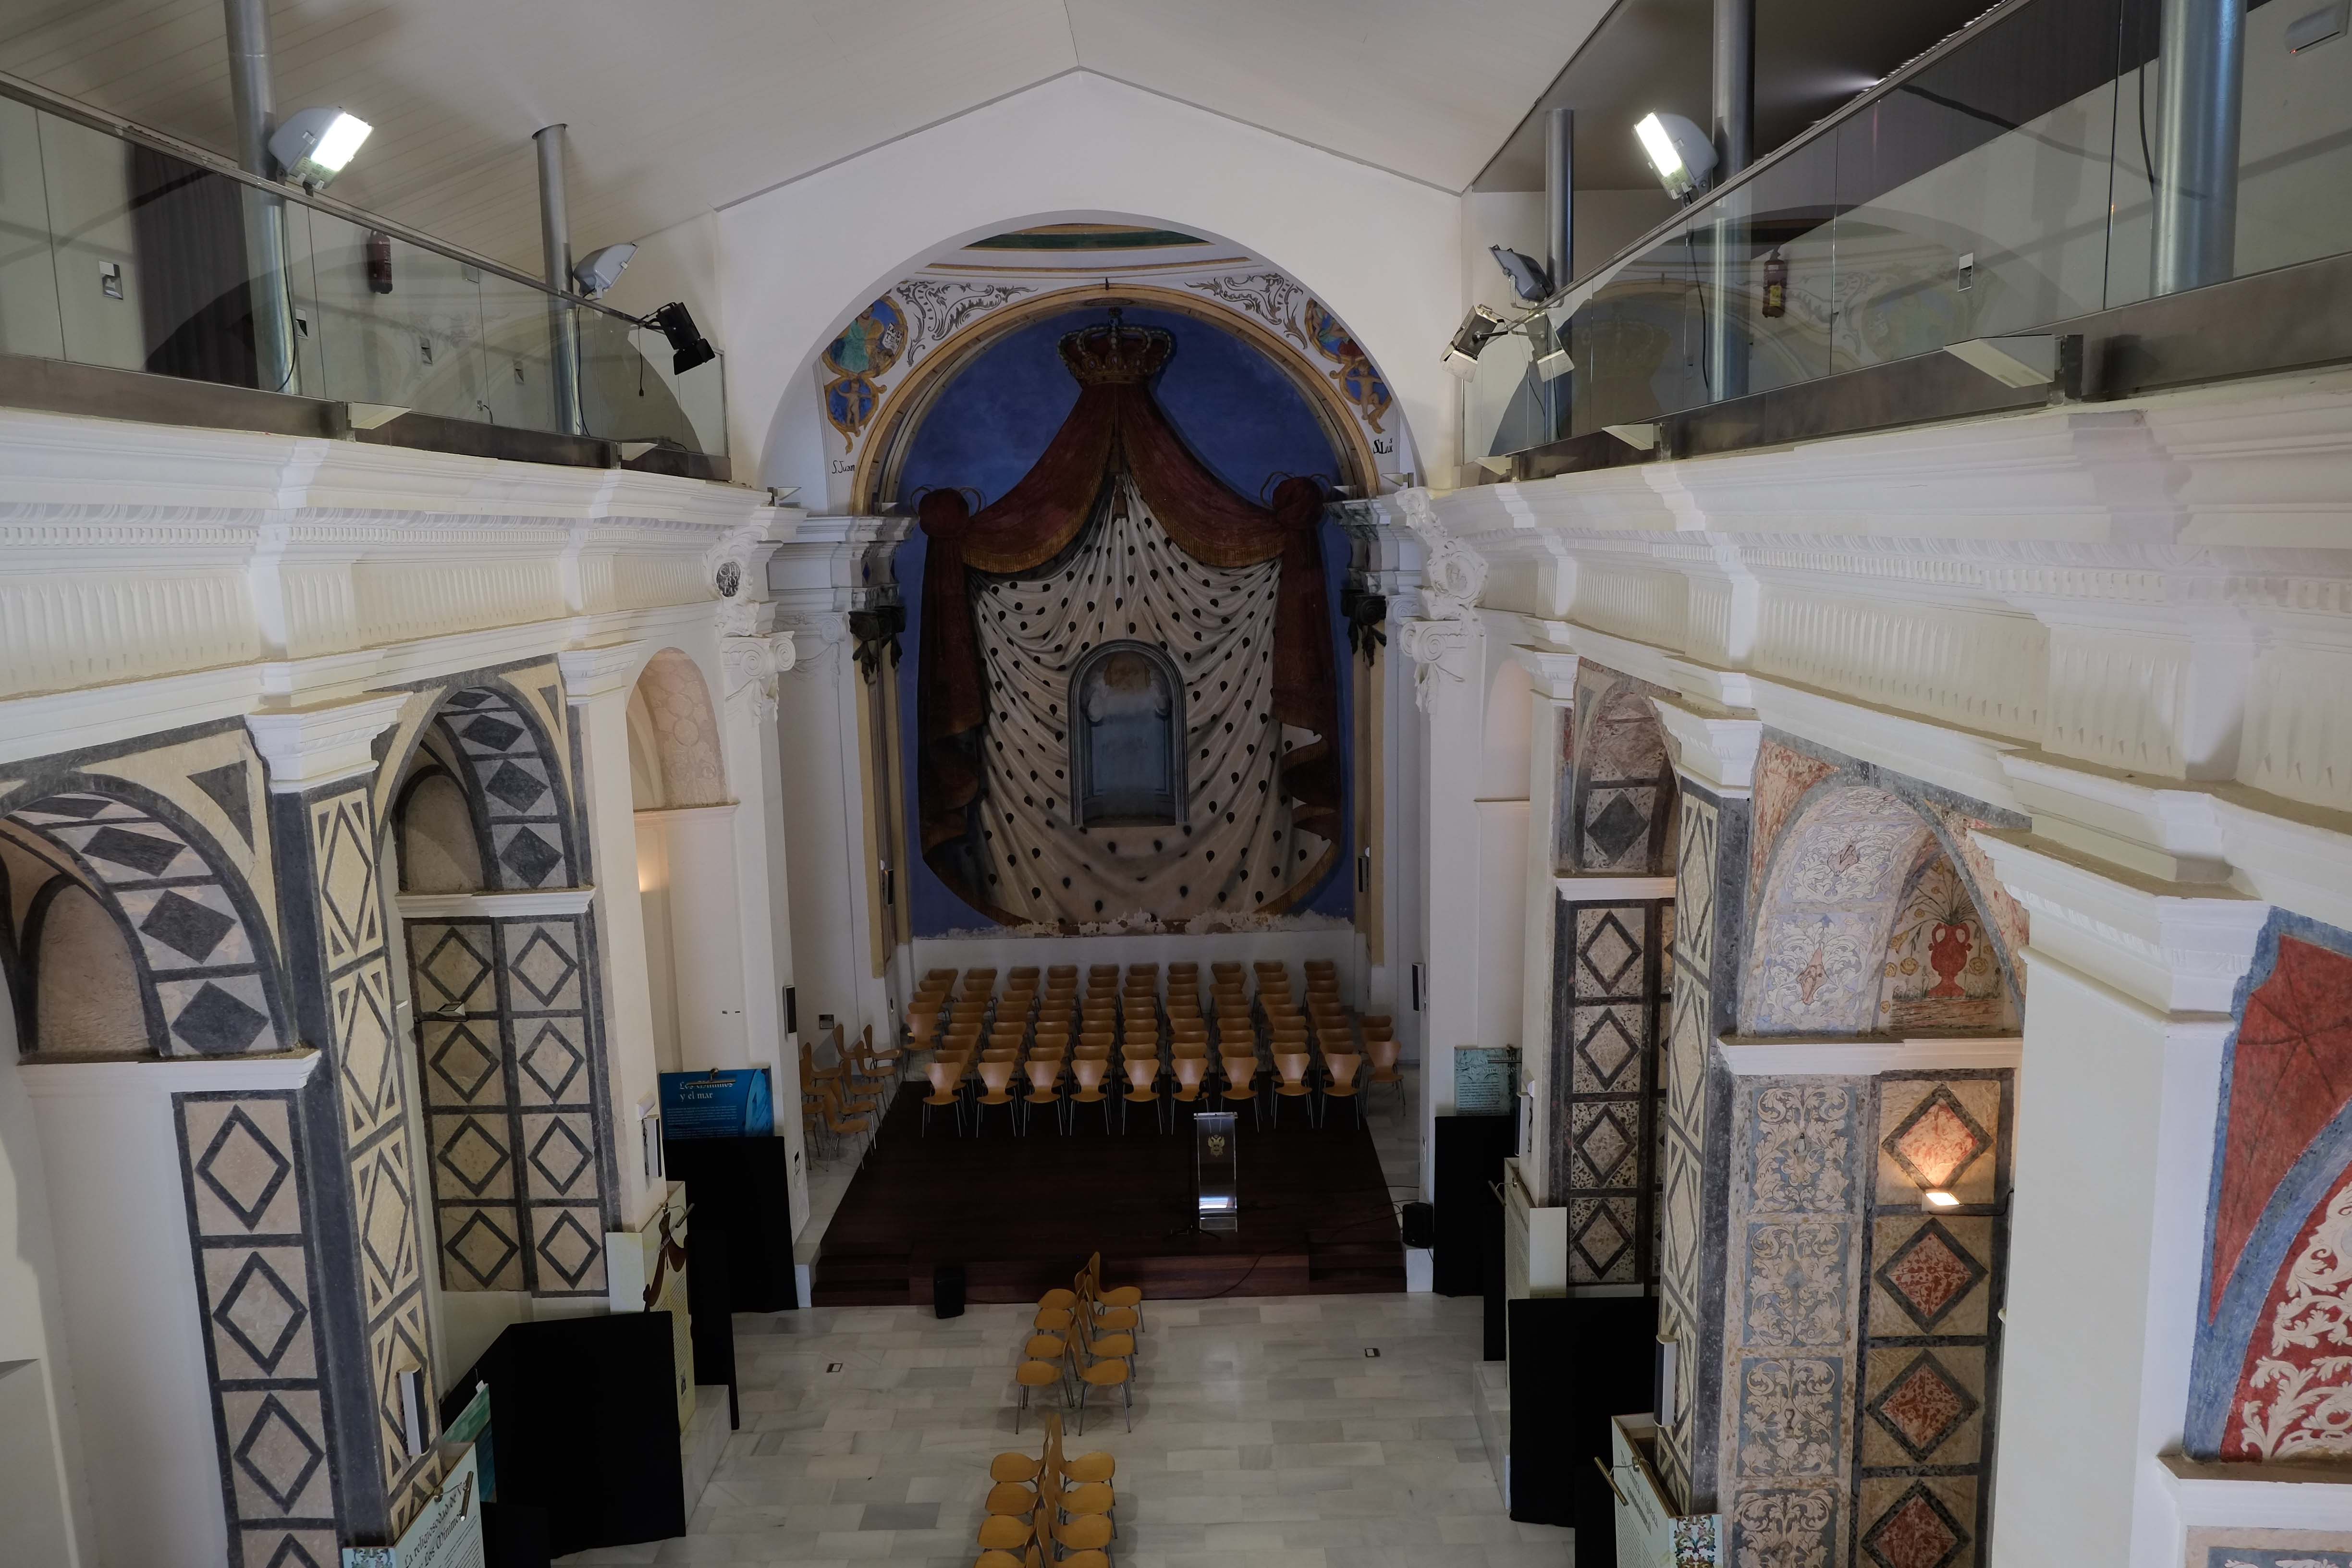 Vista del interior de la antigua iglesia, reconvertida en espacio cultural © Fotografía: Paco Bonilla